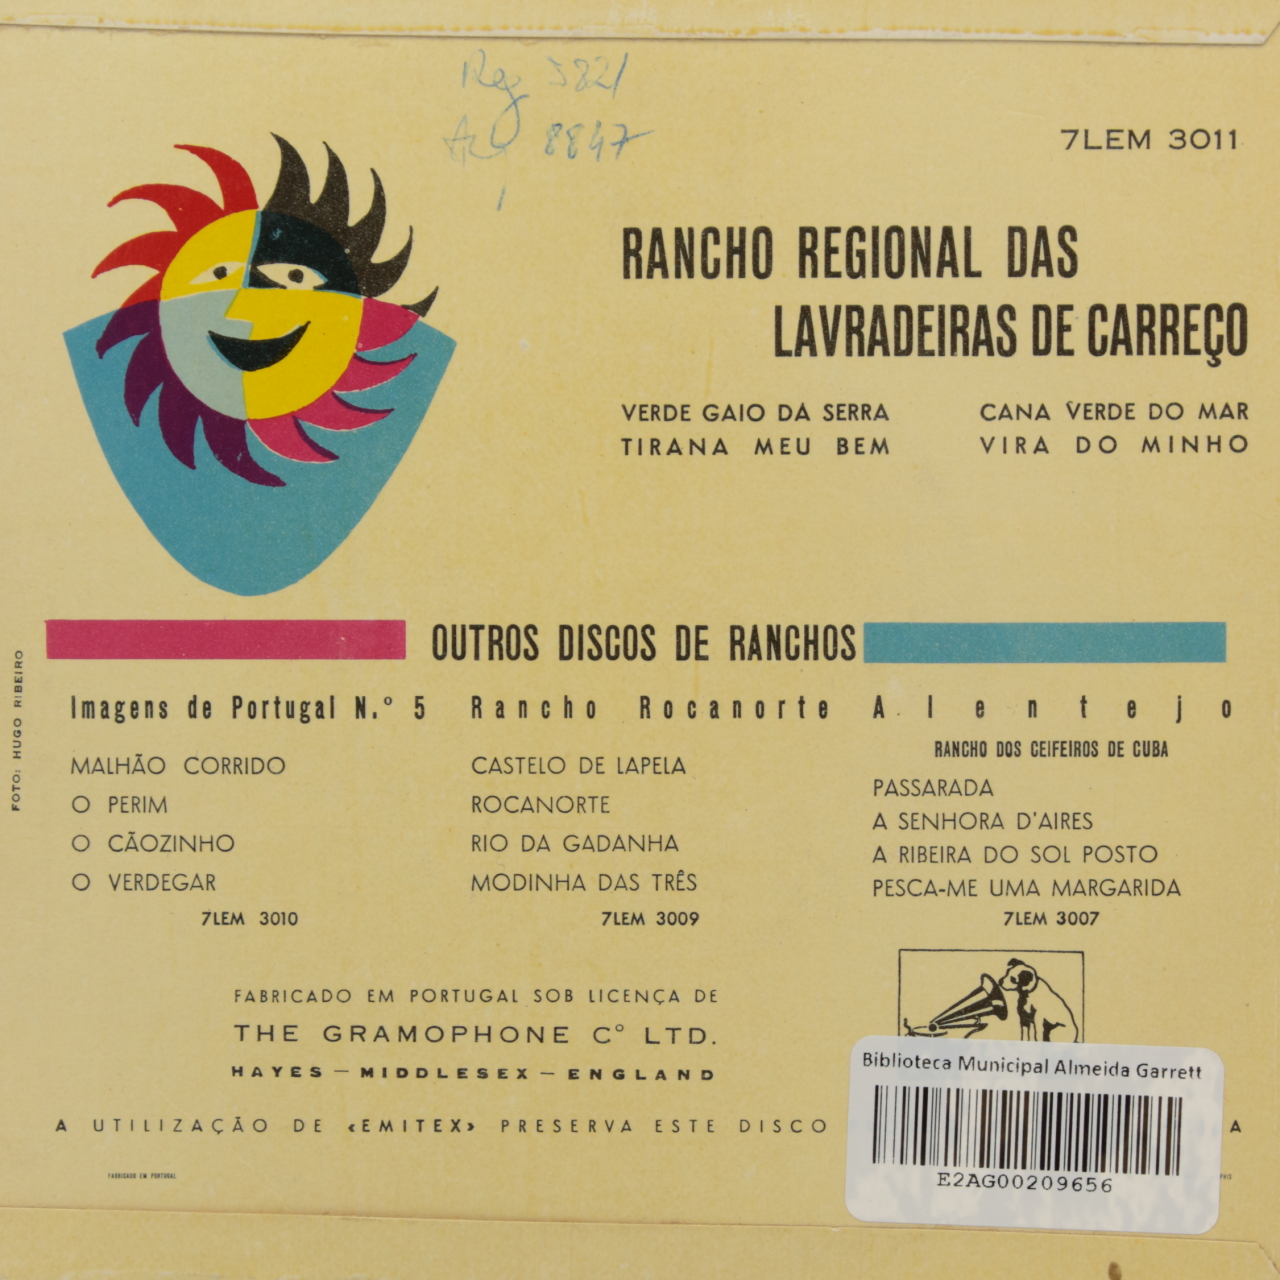 Rancho Regional das Lavradeiras de Carreço